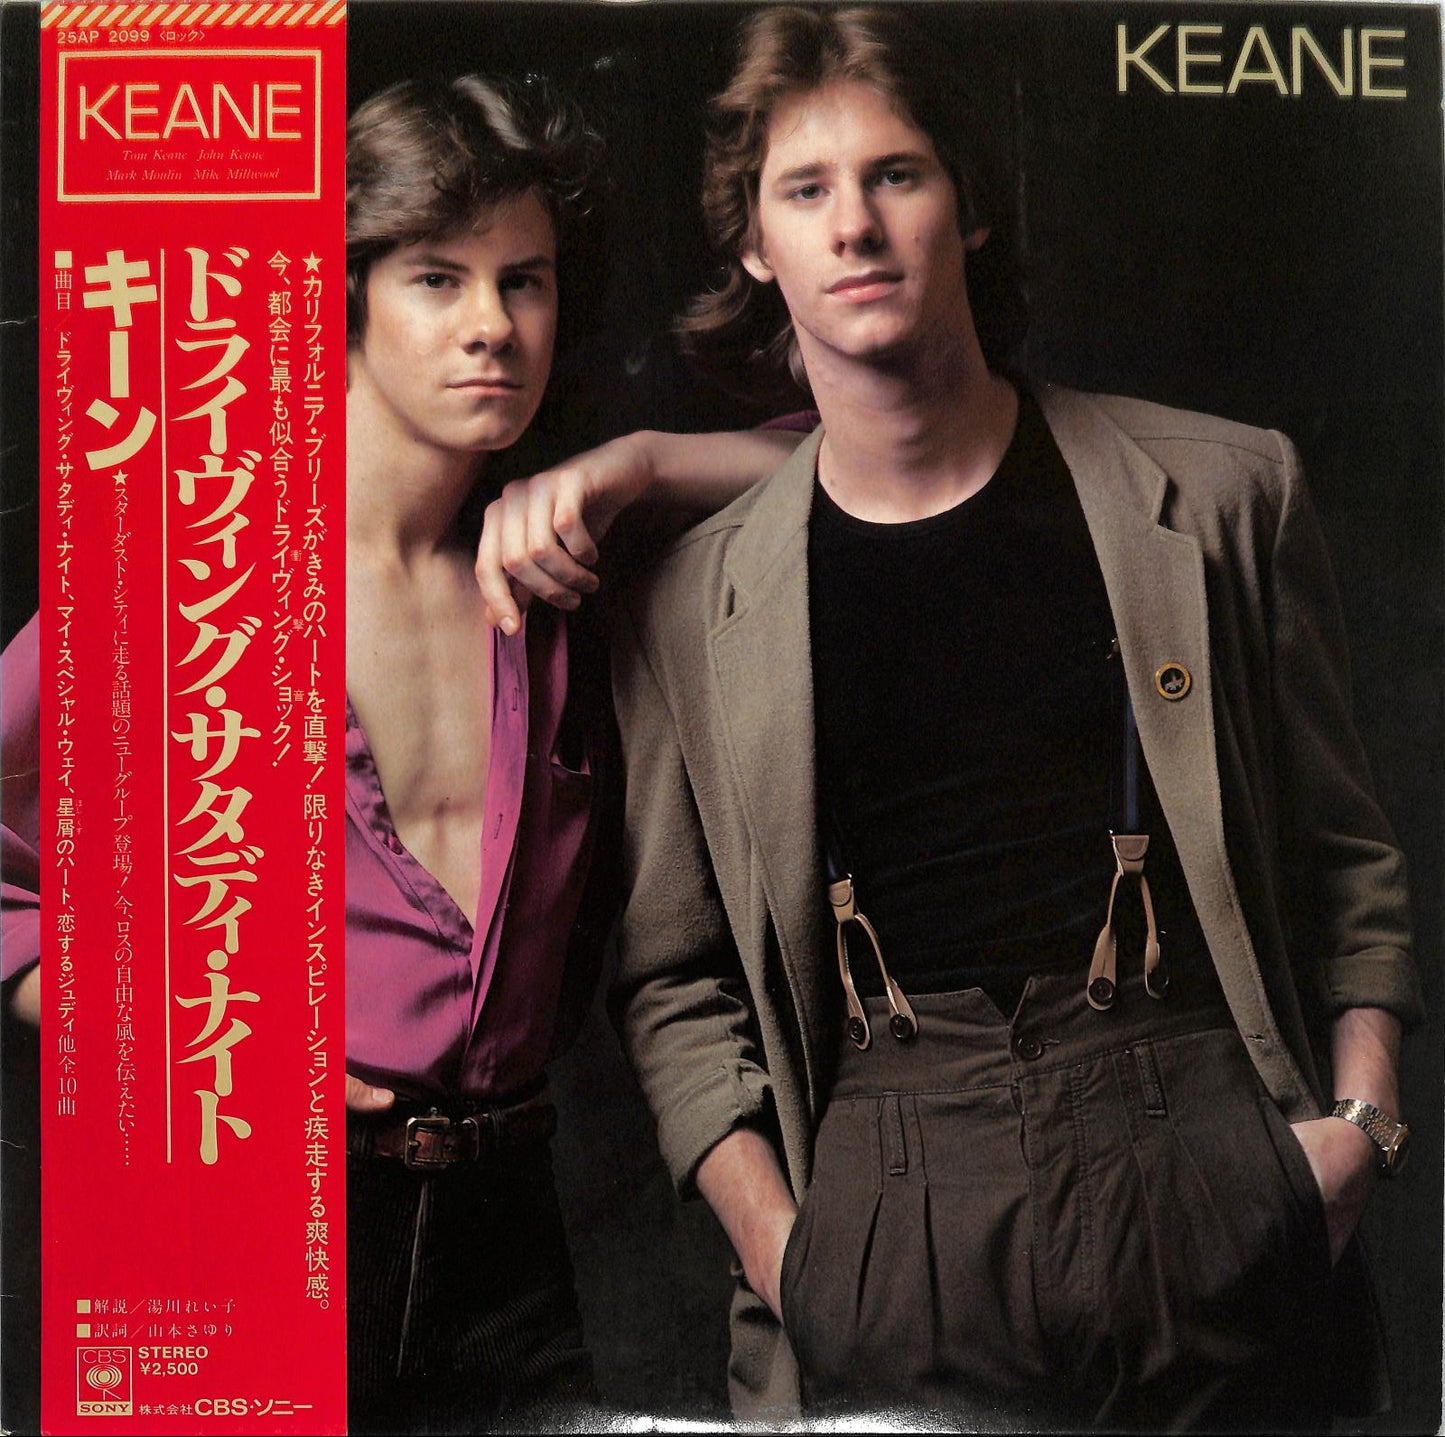 KEANE - Keane